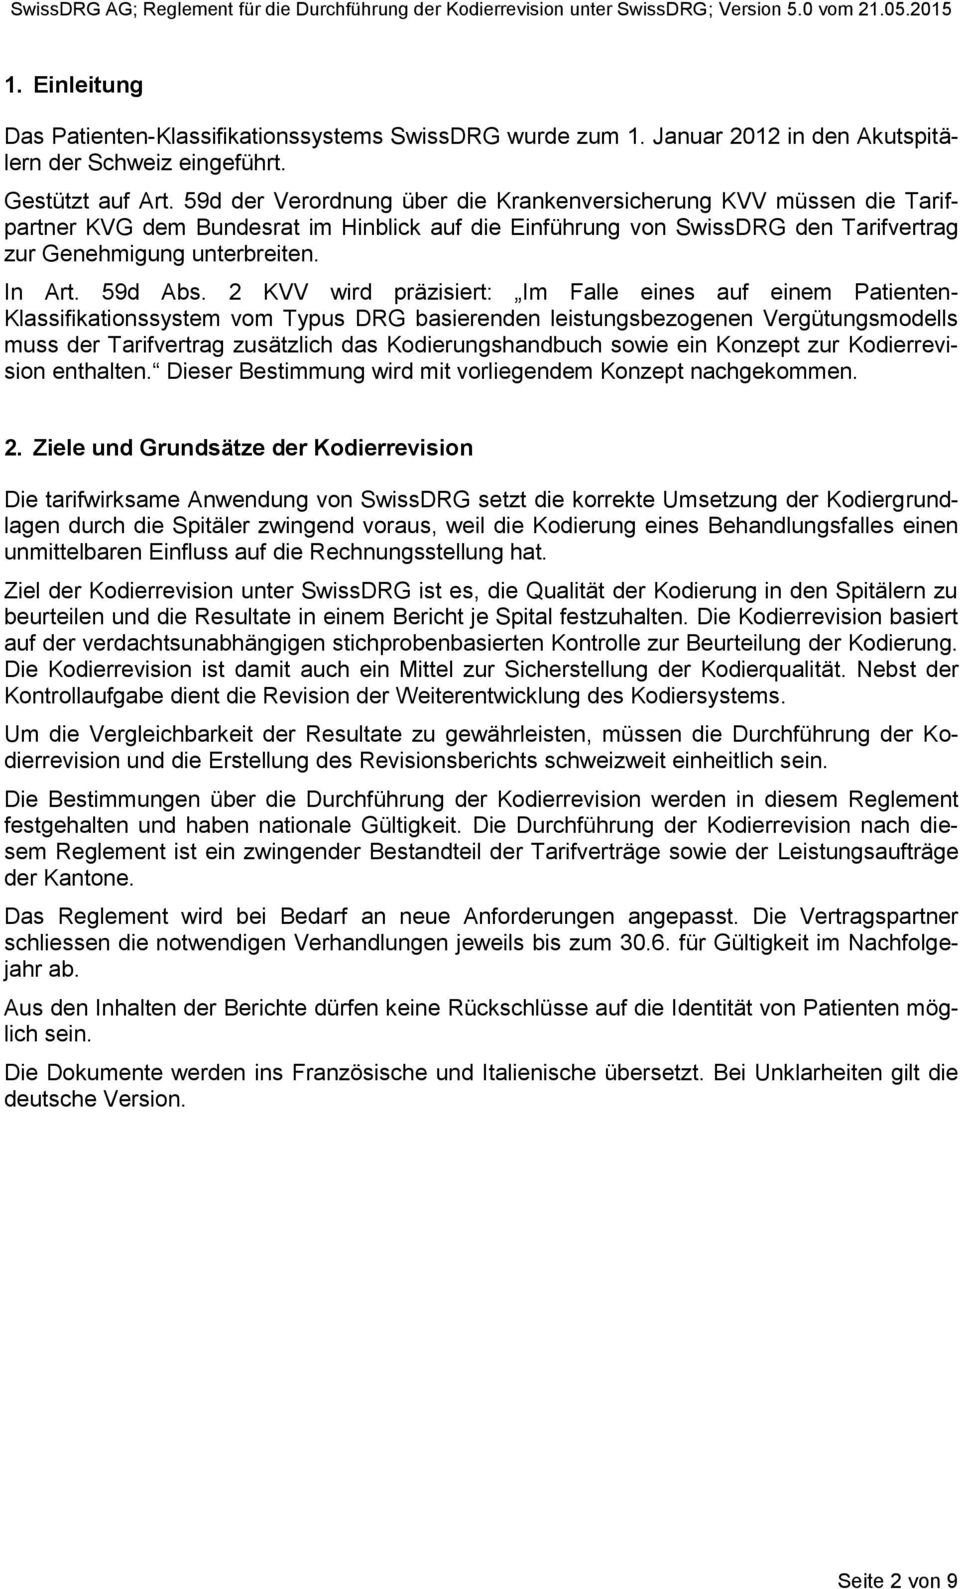 59d der Verordnung über die Krankenversicherung KVV müssen die Tarifpartner KVG dem Bundesrat im Hinblick auf die Einführung von SwissDRG den Tarifvertrag zur Genehmigung unterbreiten. In Art.